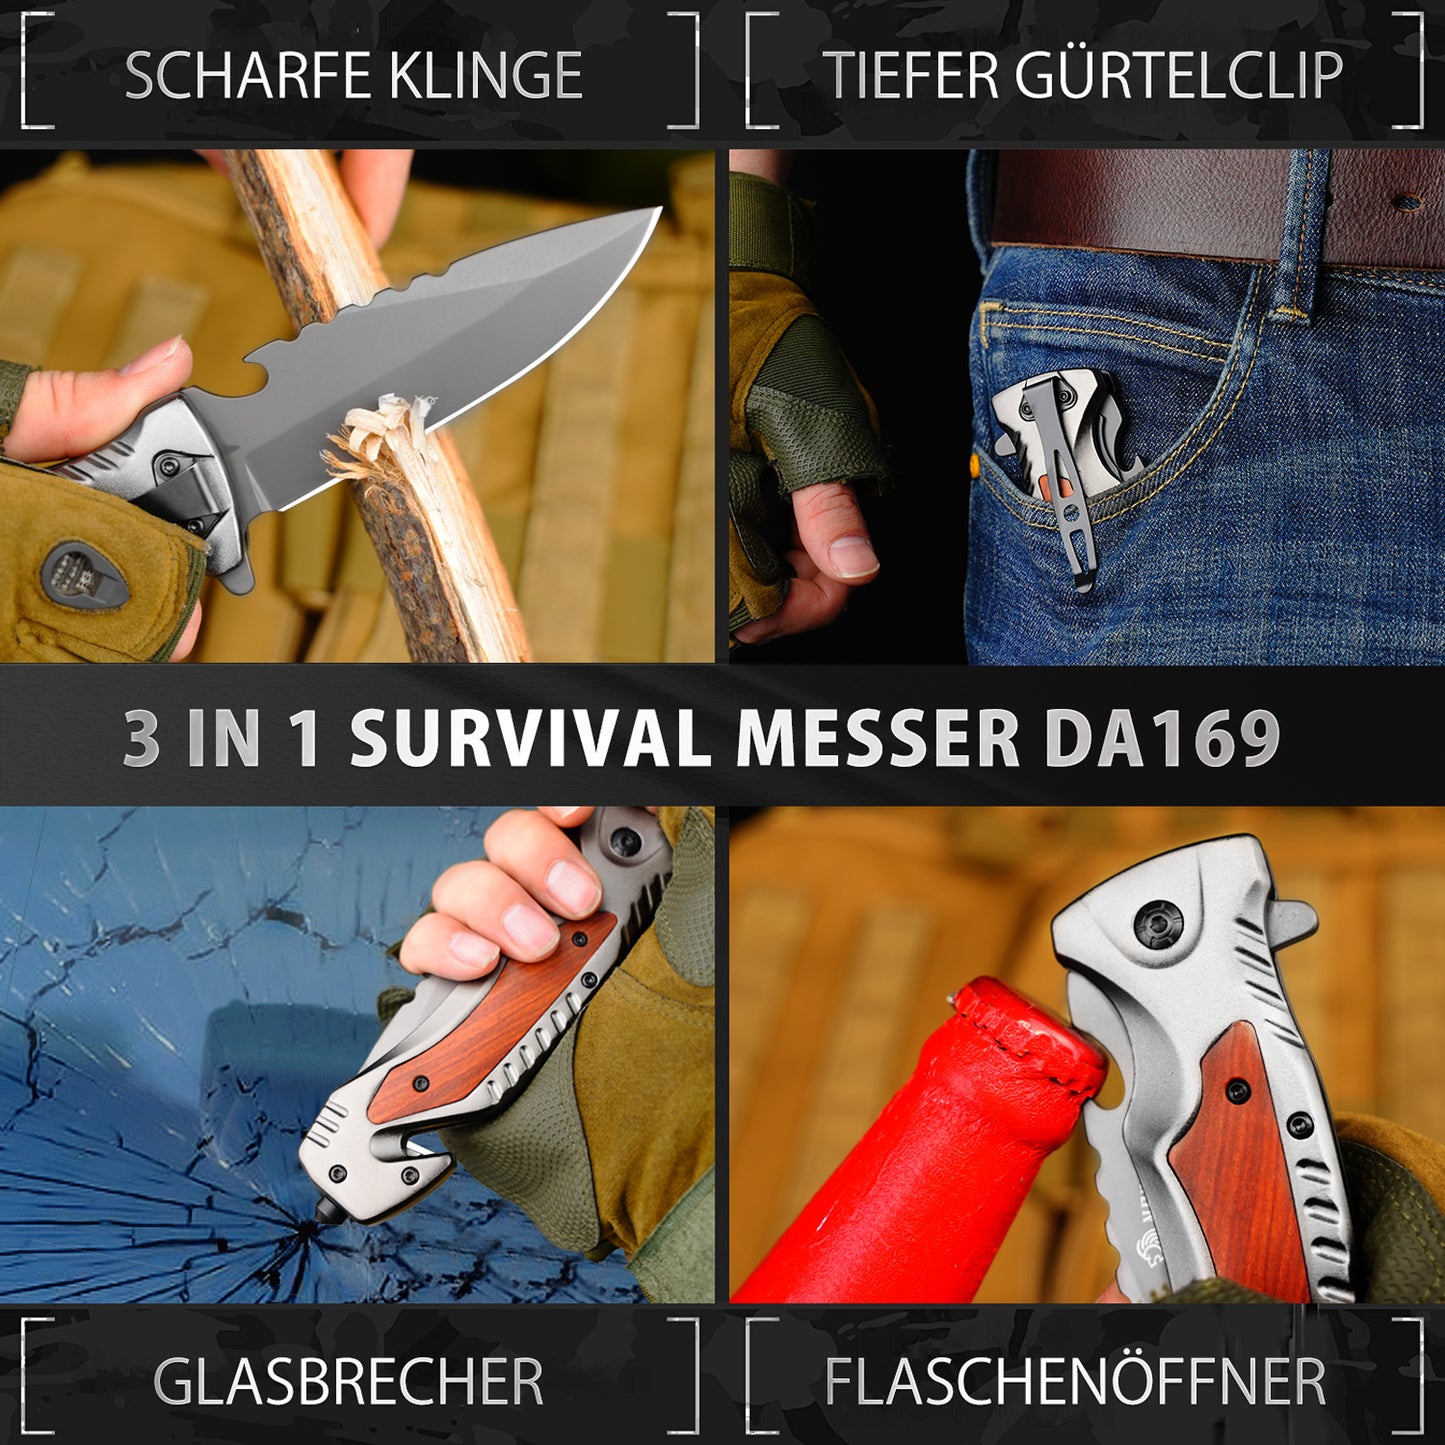 NedFoss DA169 Klappmesser - 3 IN 1 Taschenmesser mit Glasbrecher und Gurtschneider, Einhandmesser, Rettungsmesser, Überlebensmesser, Survival Messer